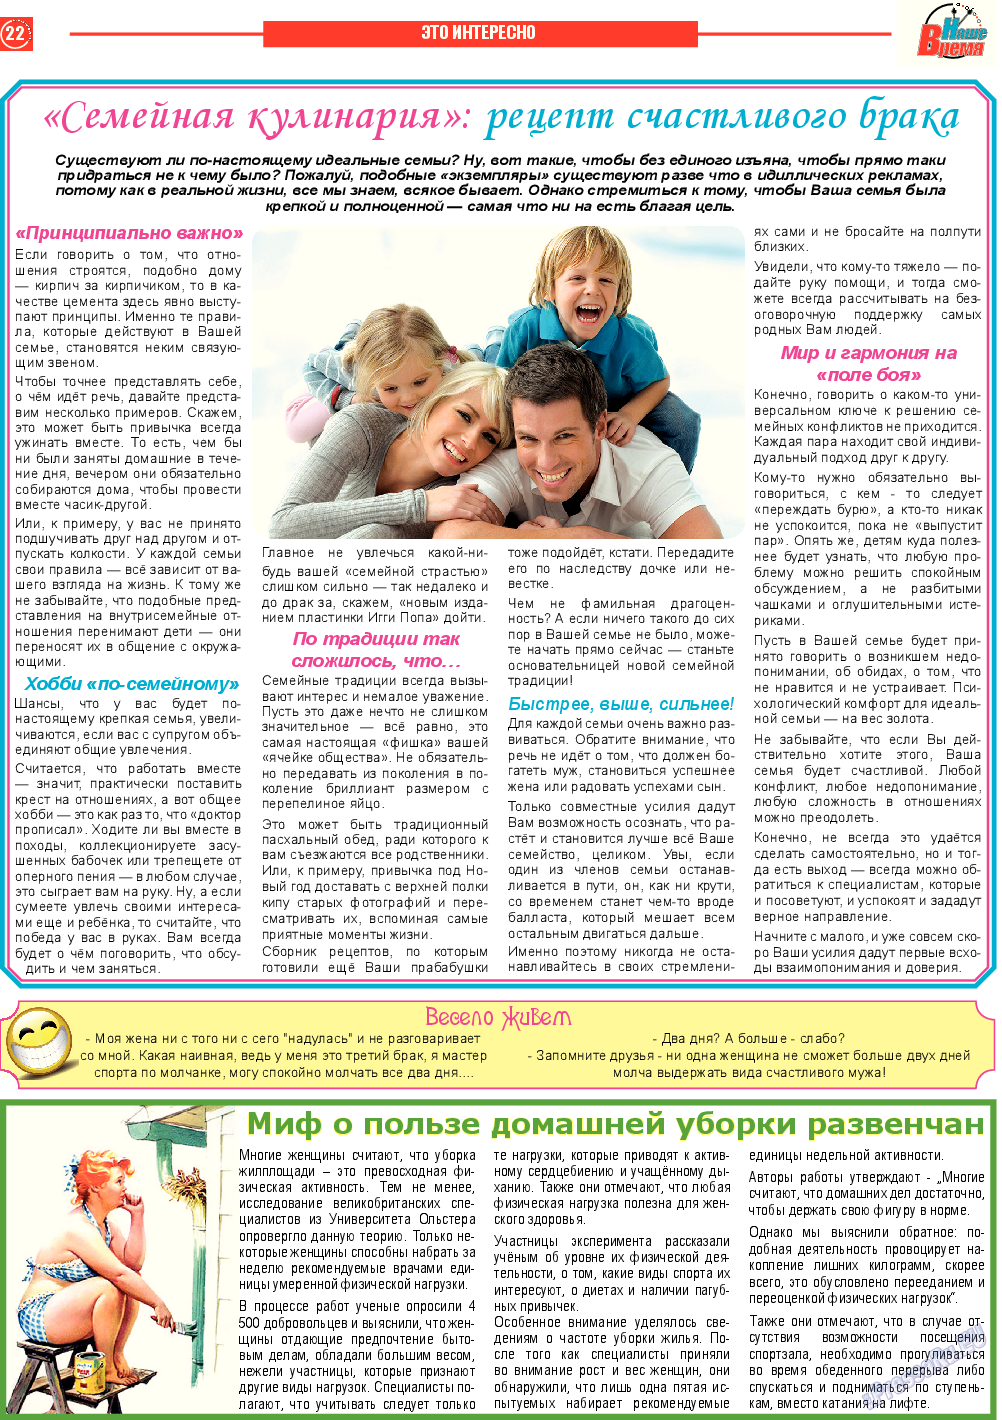 Наше время, газета. 2014 №6 стр.22